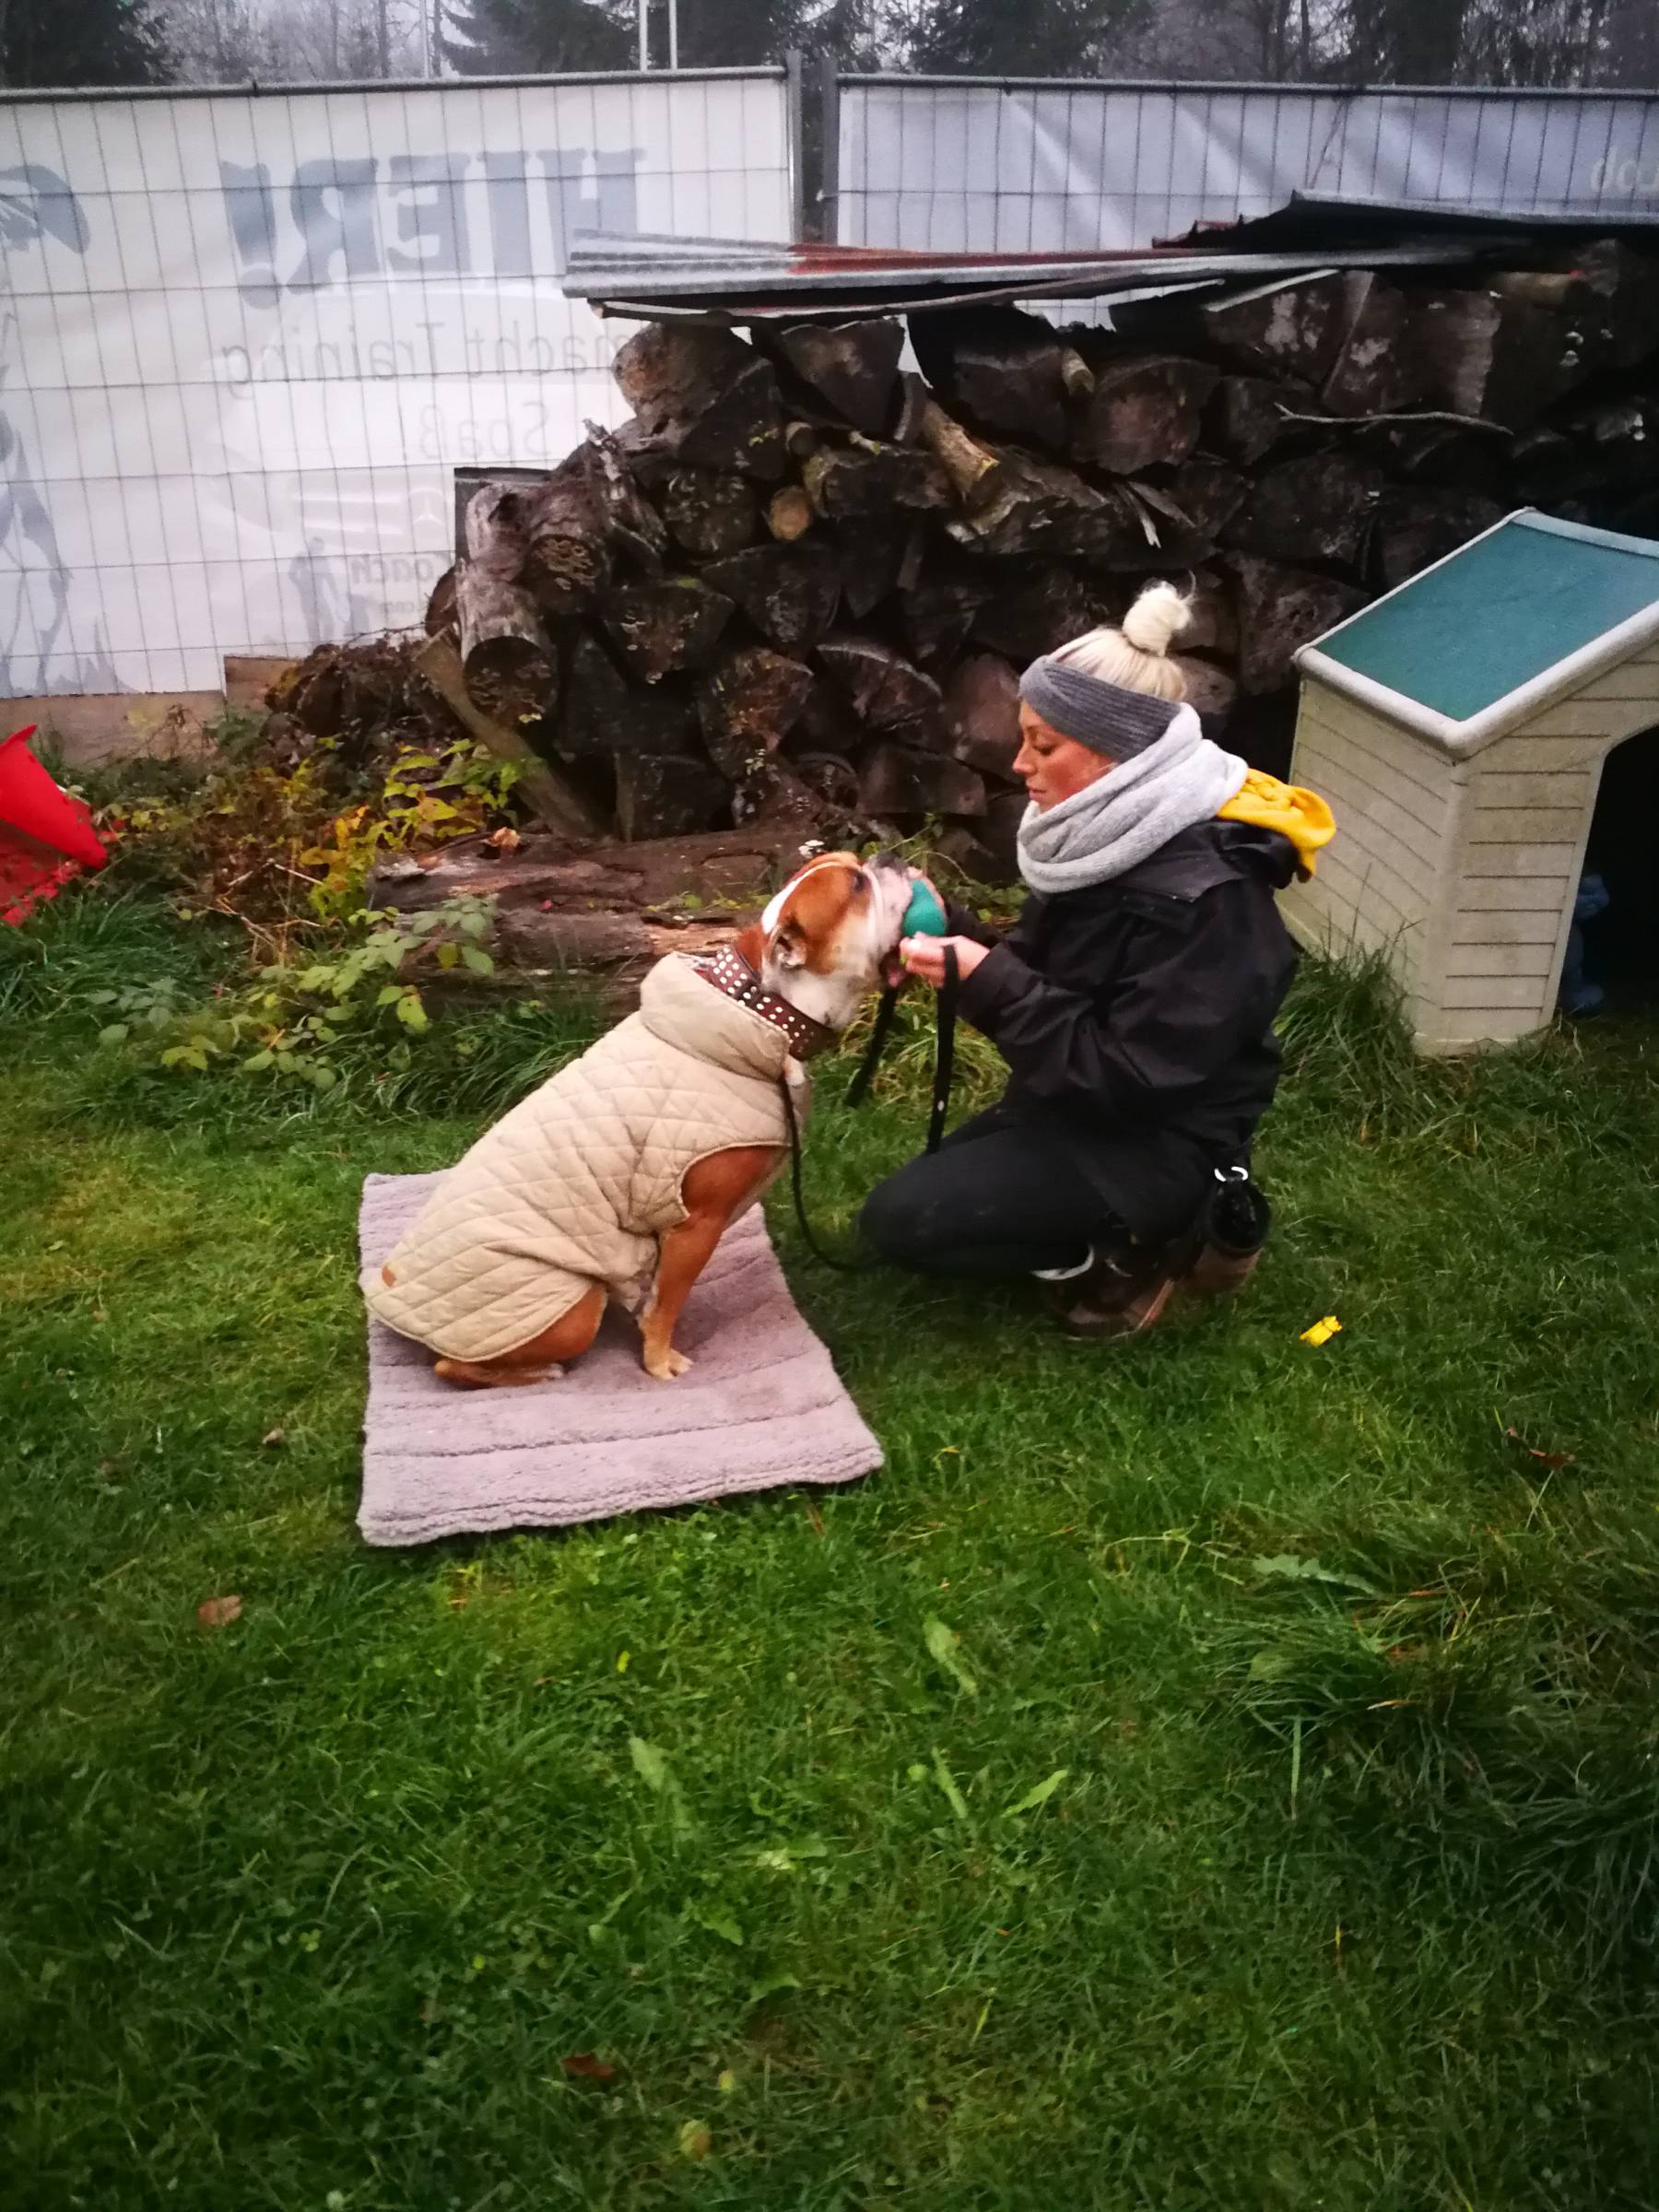 Hundeschule Allgäu - Vorbereitung - Training - Miteinander arbeiten